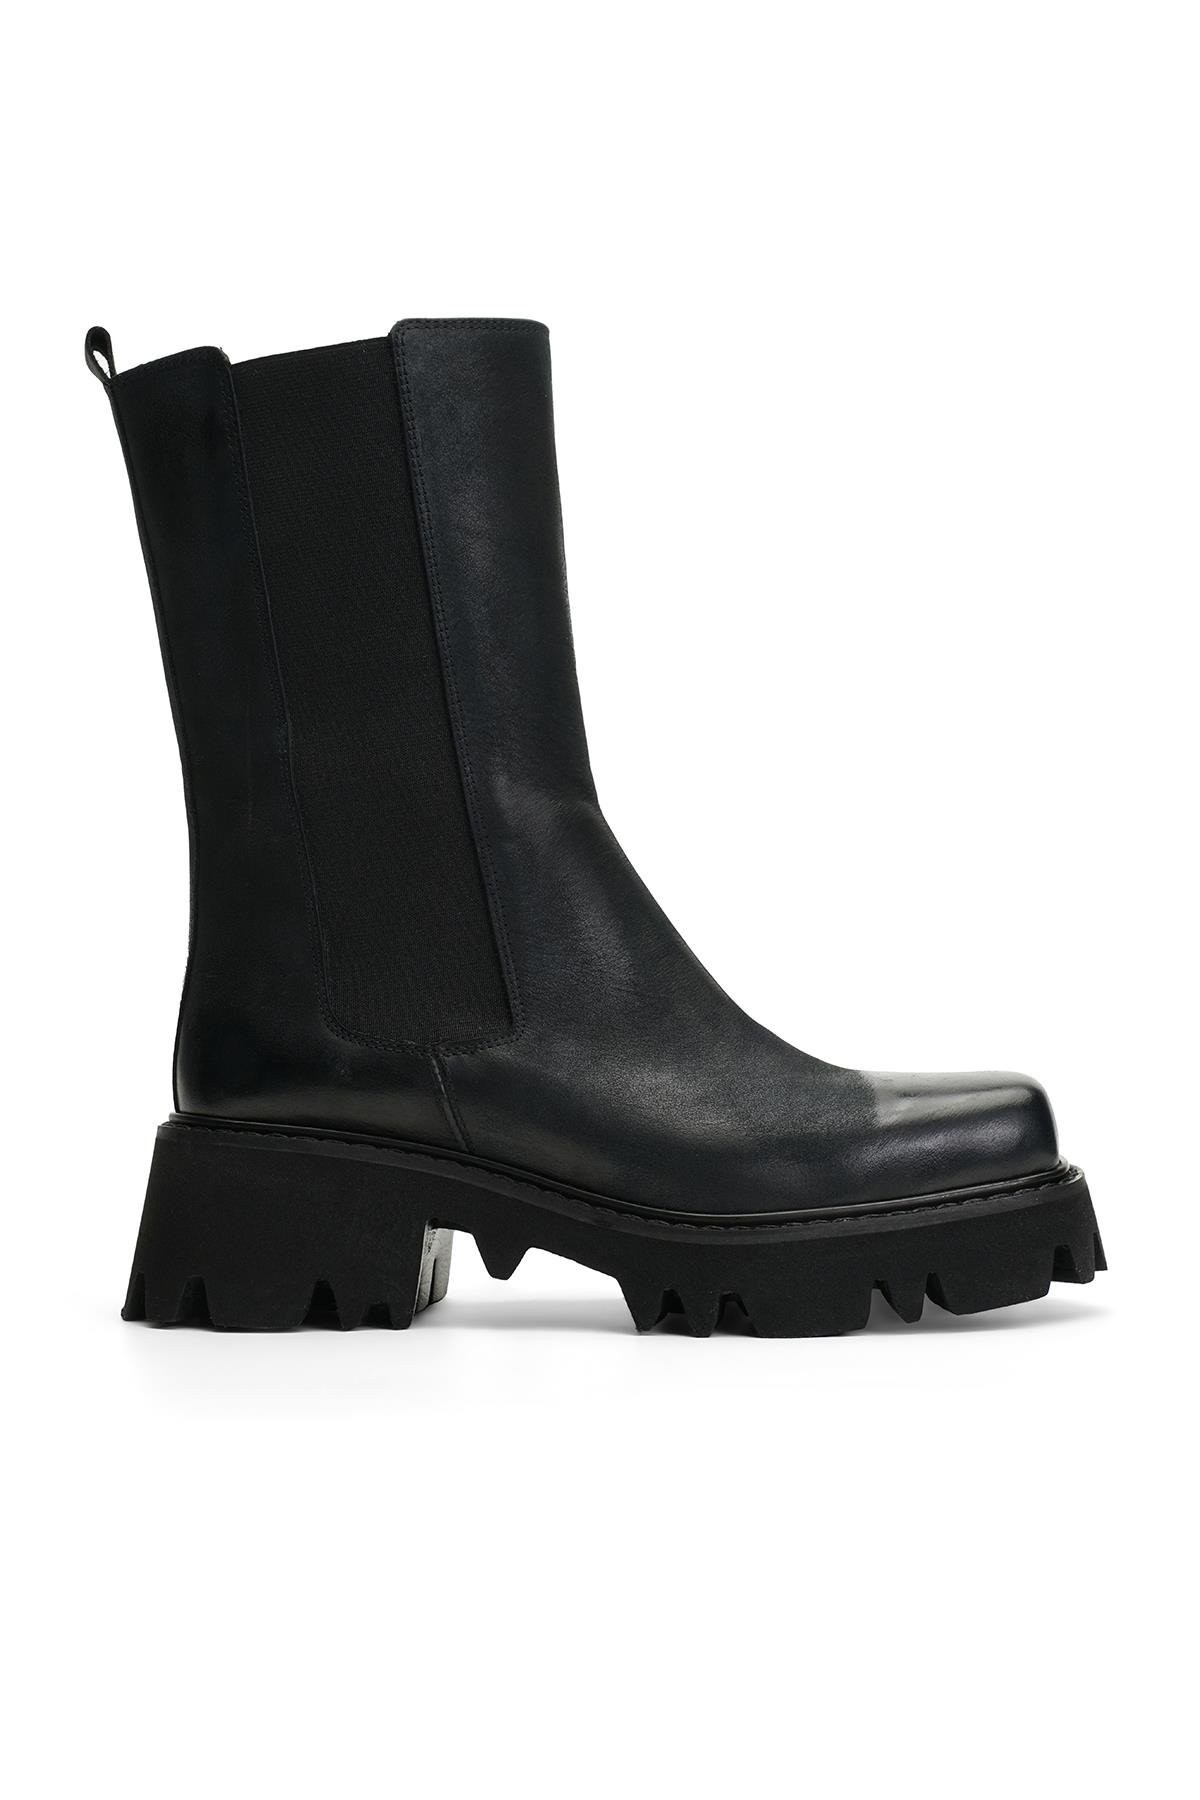 Jabotter Corina Black Leather Boots